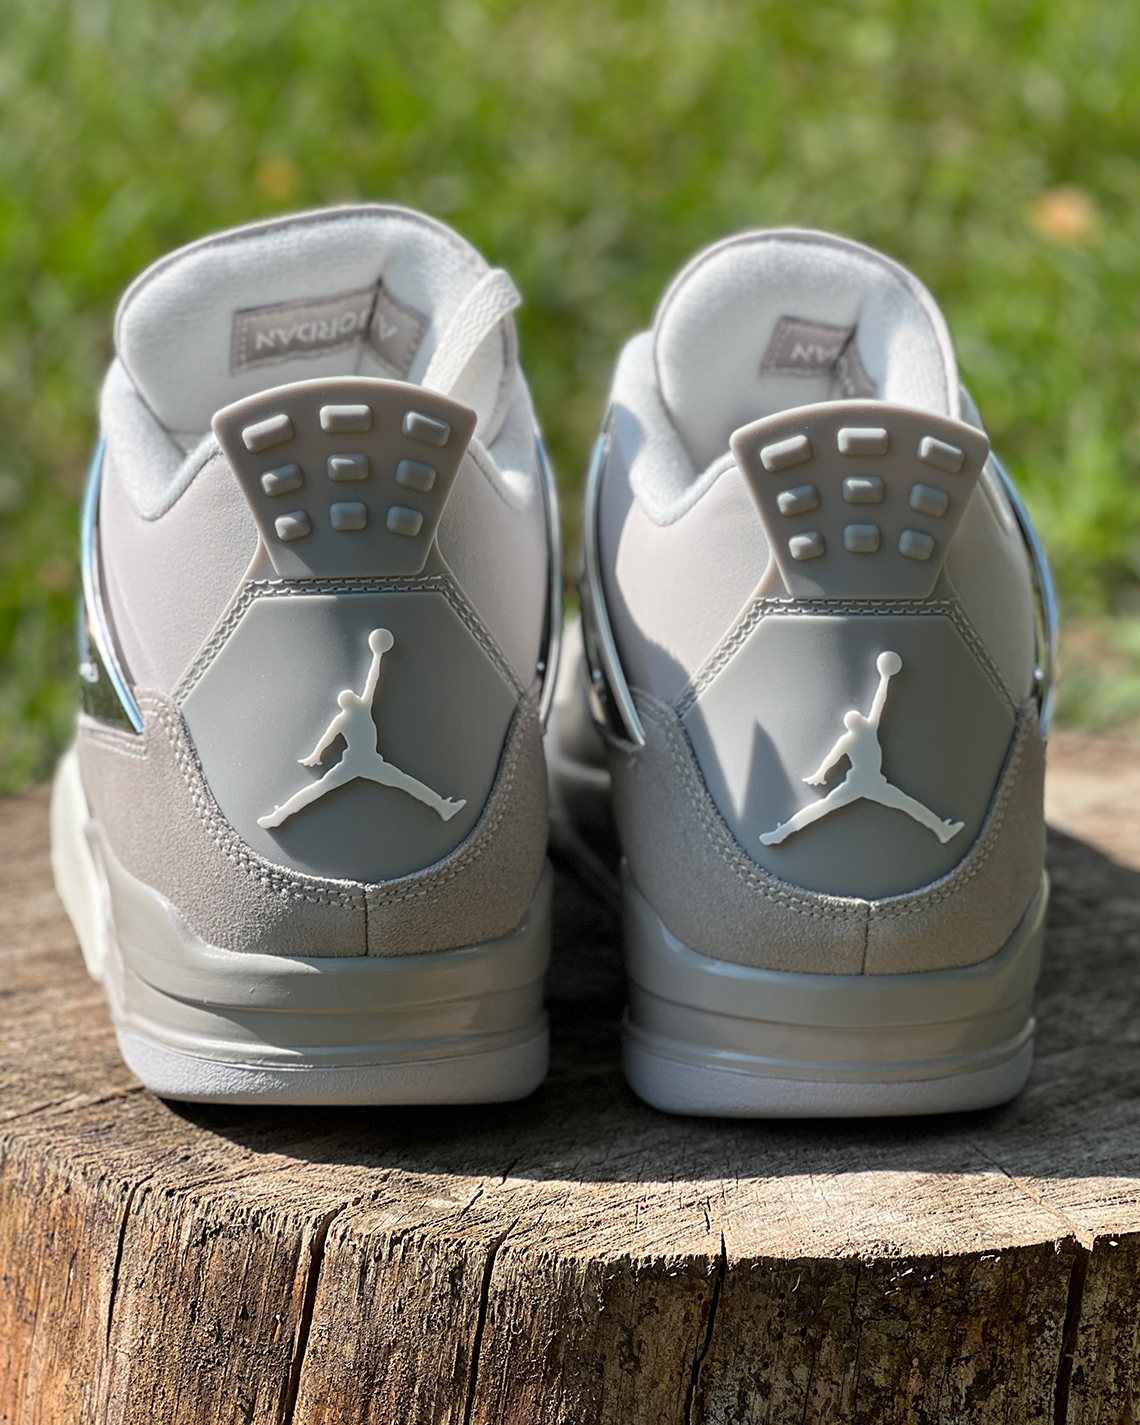 Jordan Brand brings back the Air Jordan 1 Mid New Love that